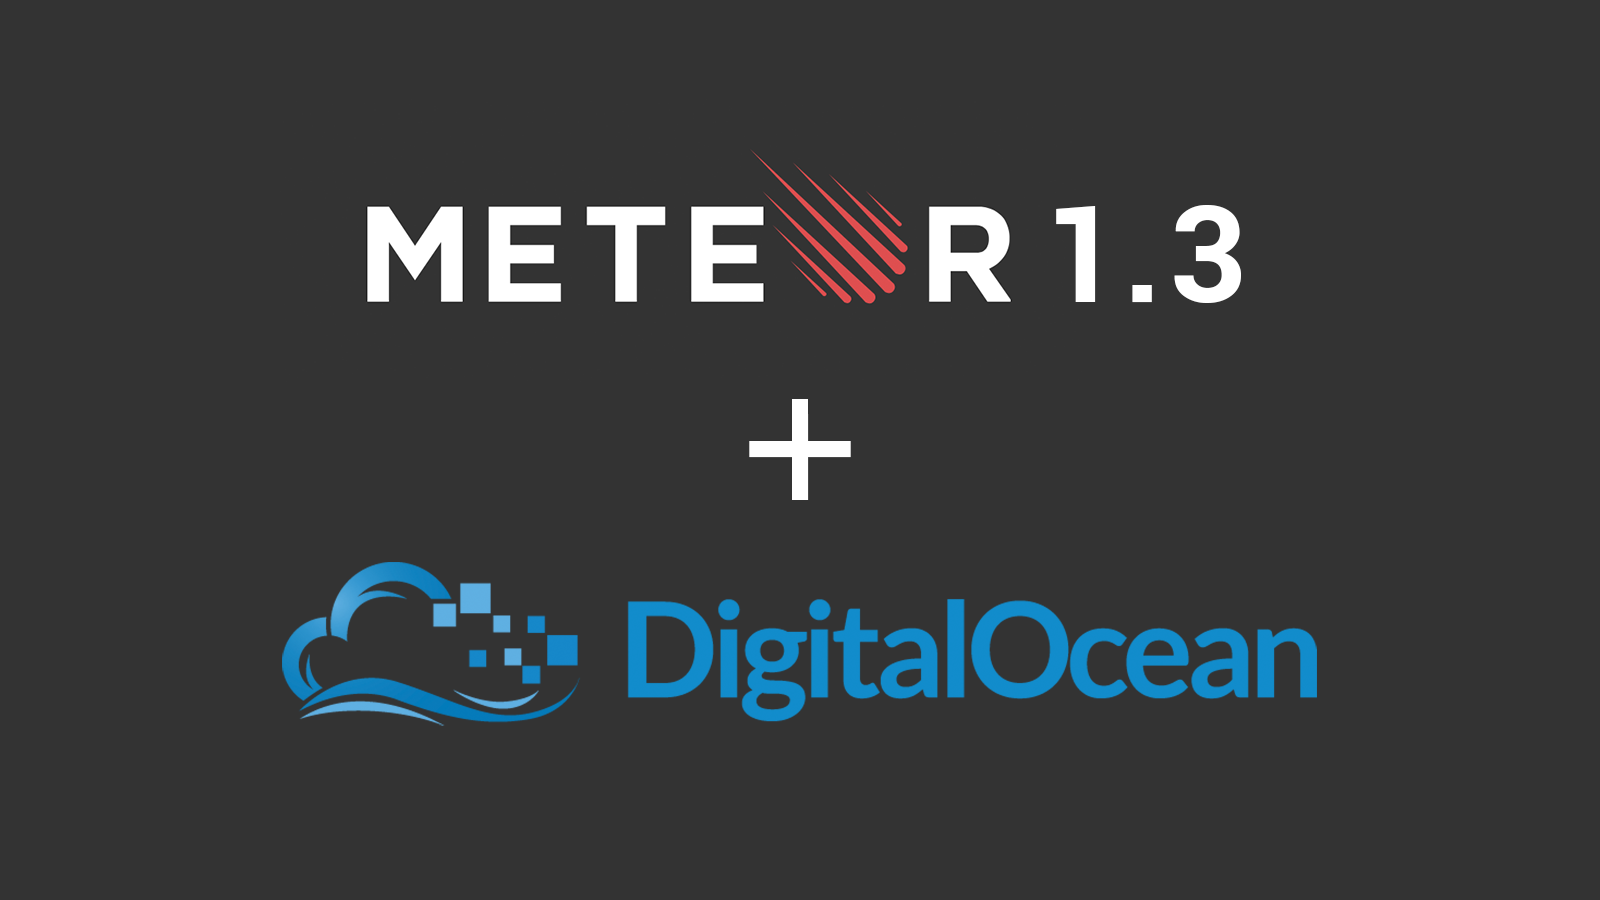 Deploy Meteor 1.3 to DigitalOcean